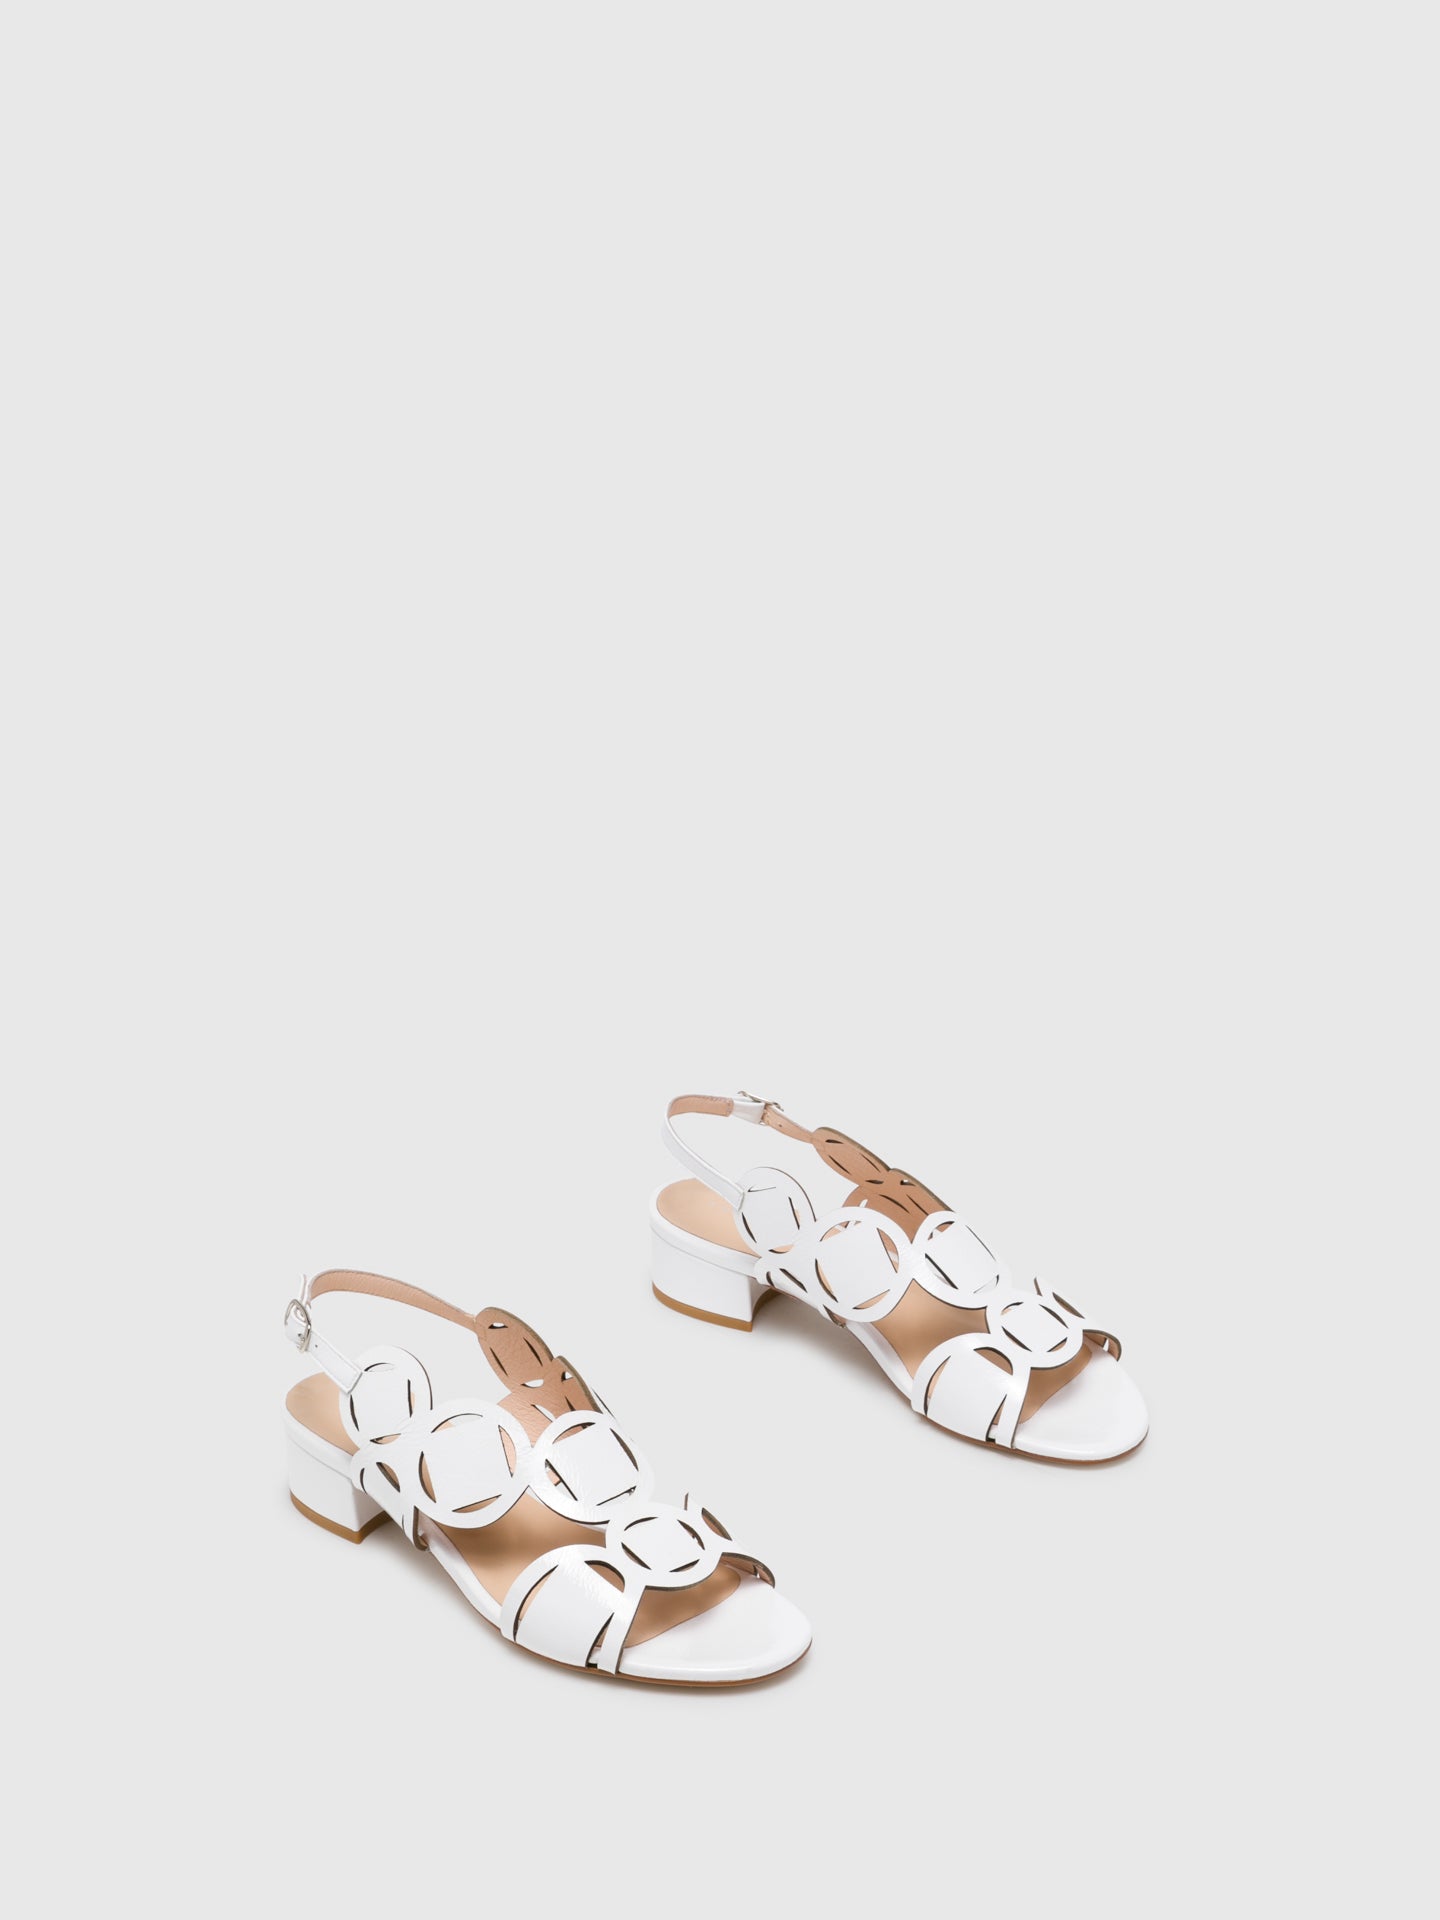 Sofia Costa White Buckle Sandals